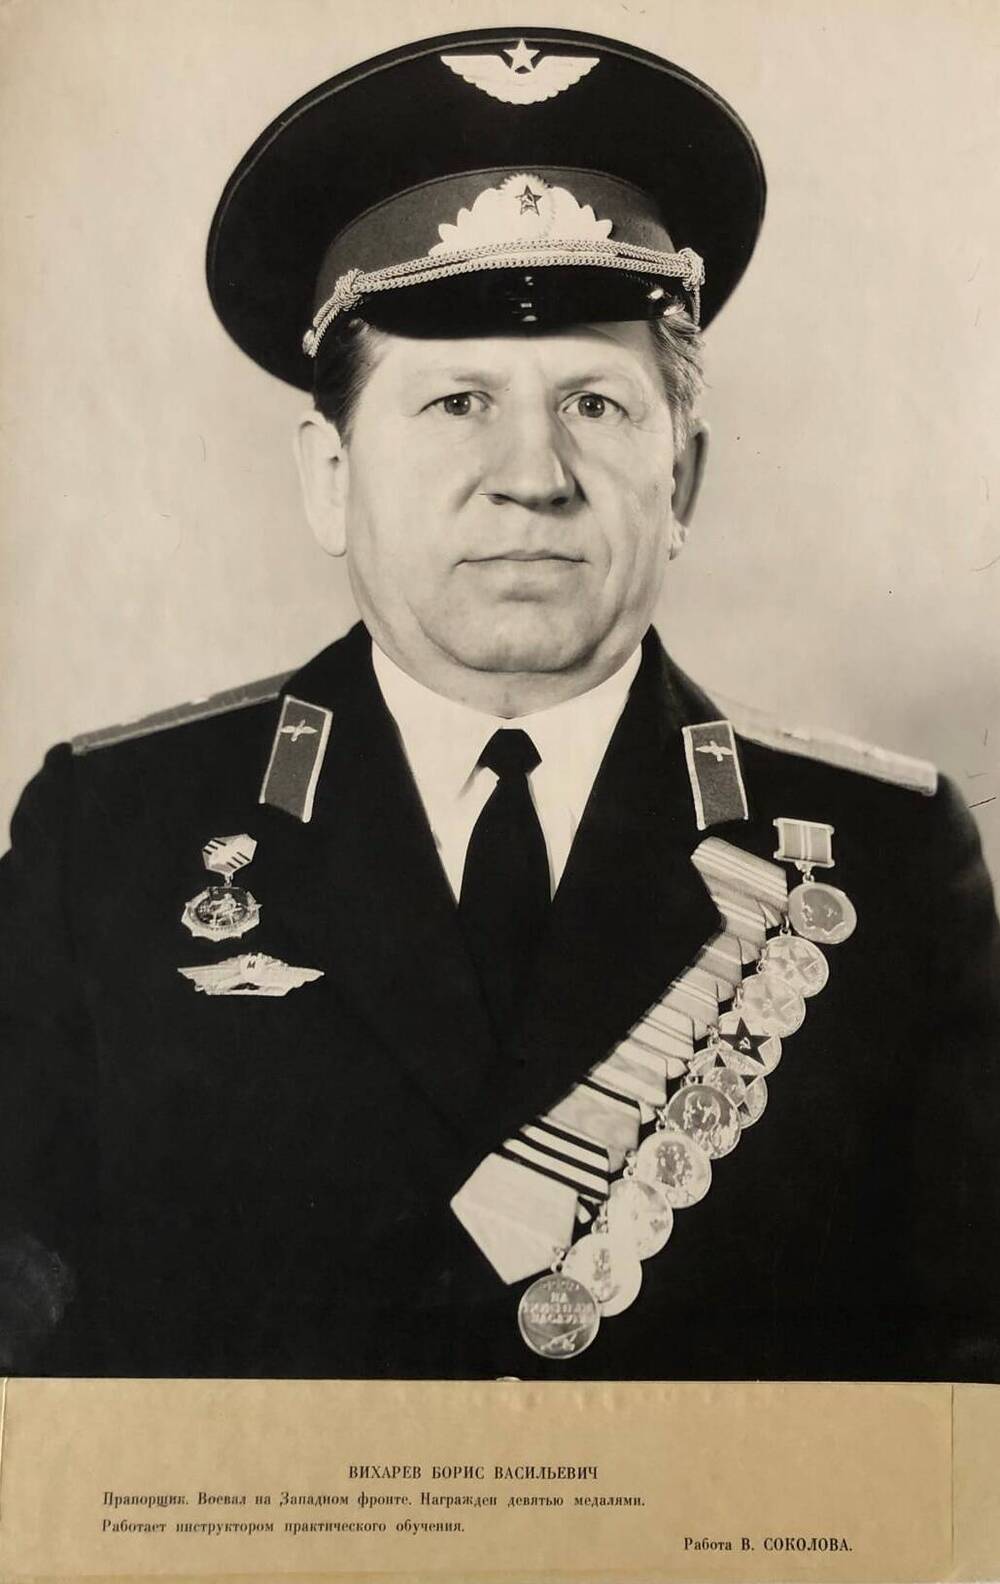 Фотография Вихарева Бориса Васильевича,  участника Великой Отечественной войны 1941-1945 гг.